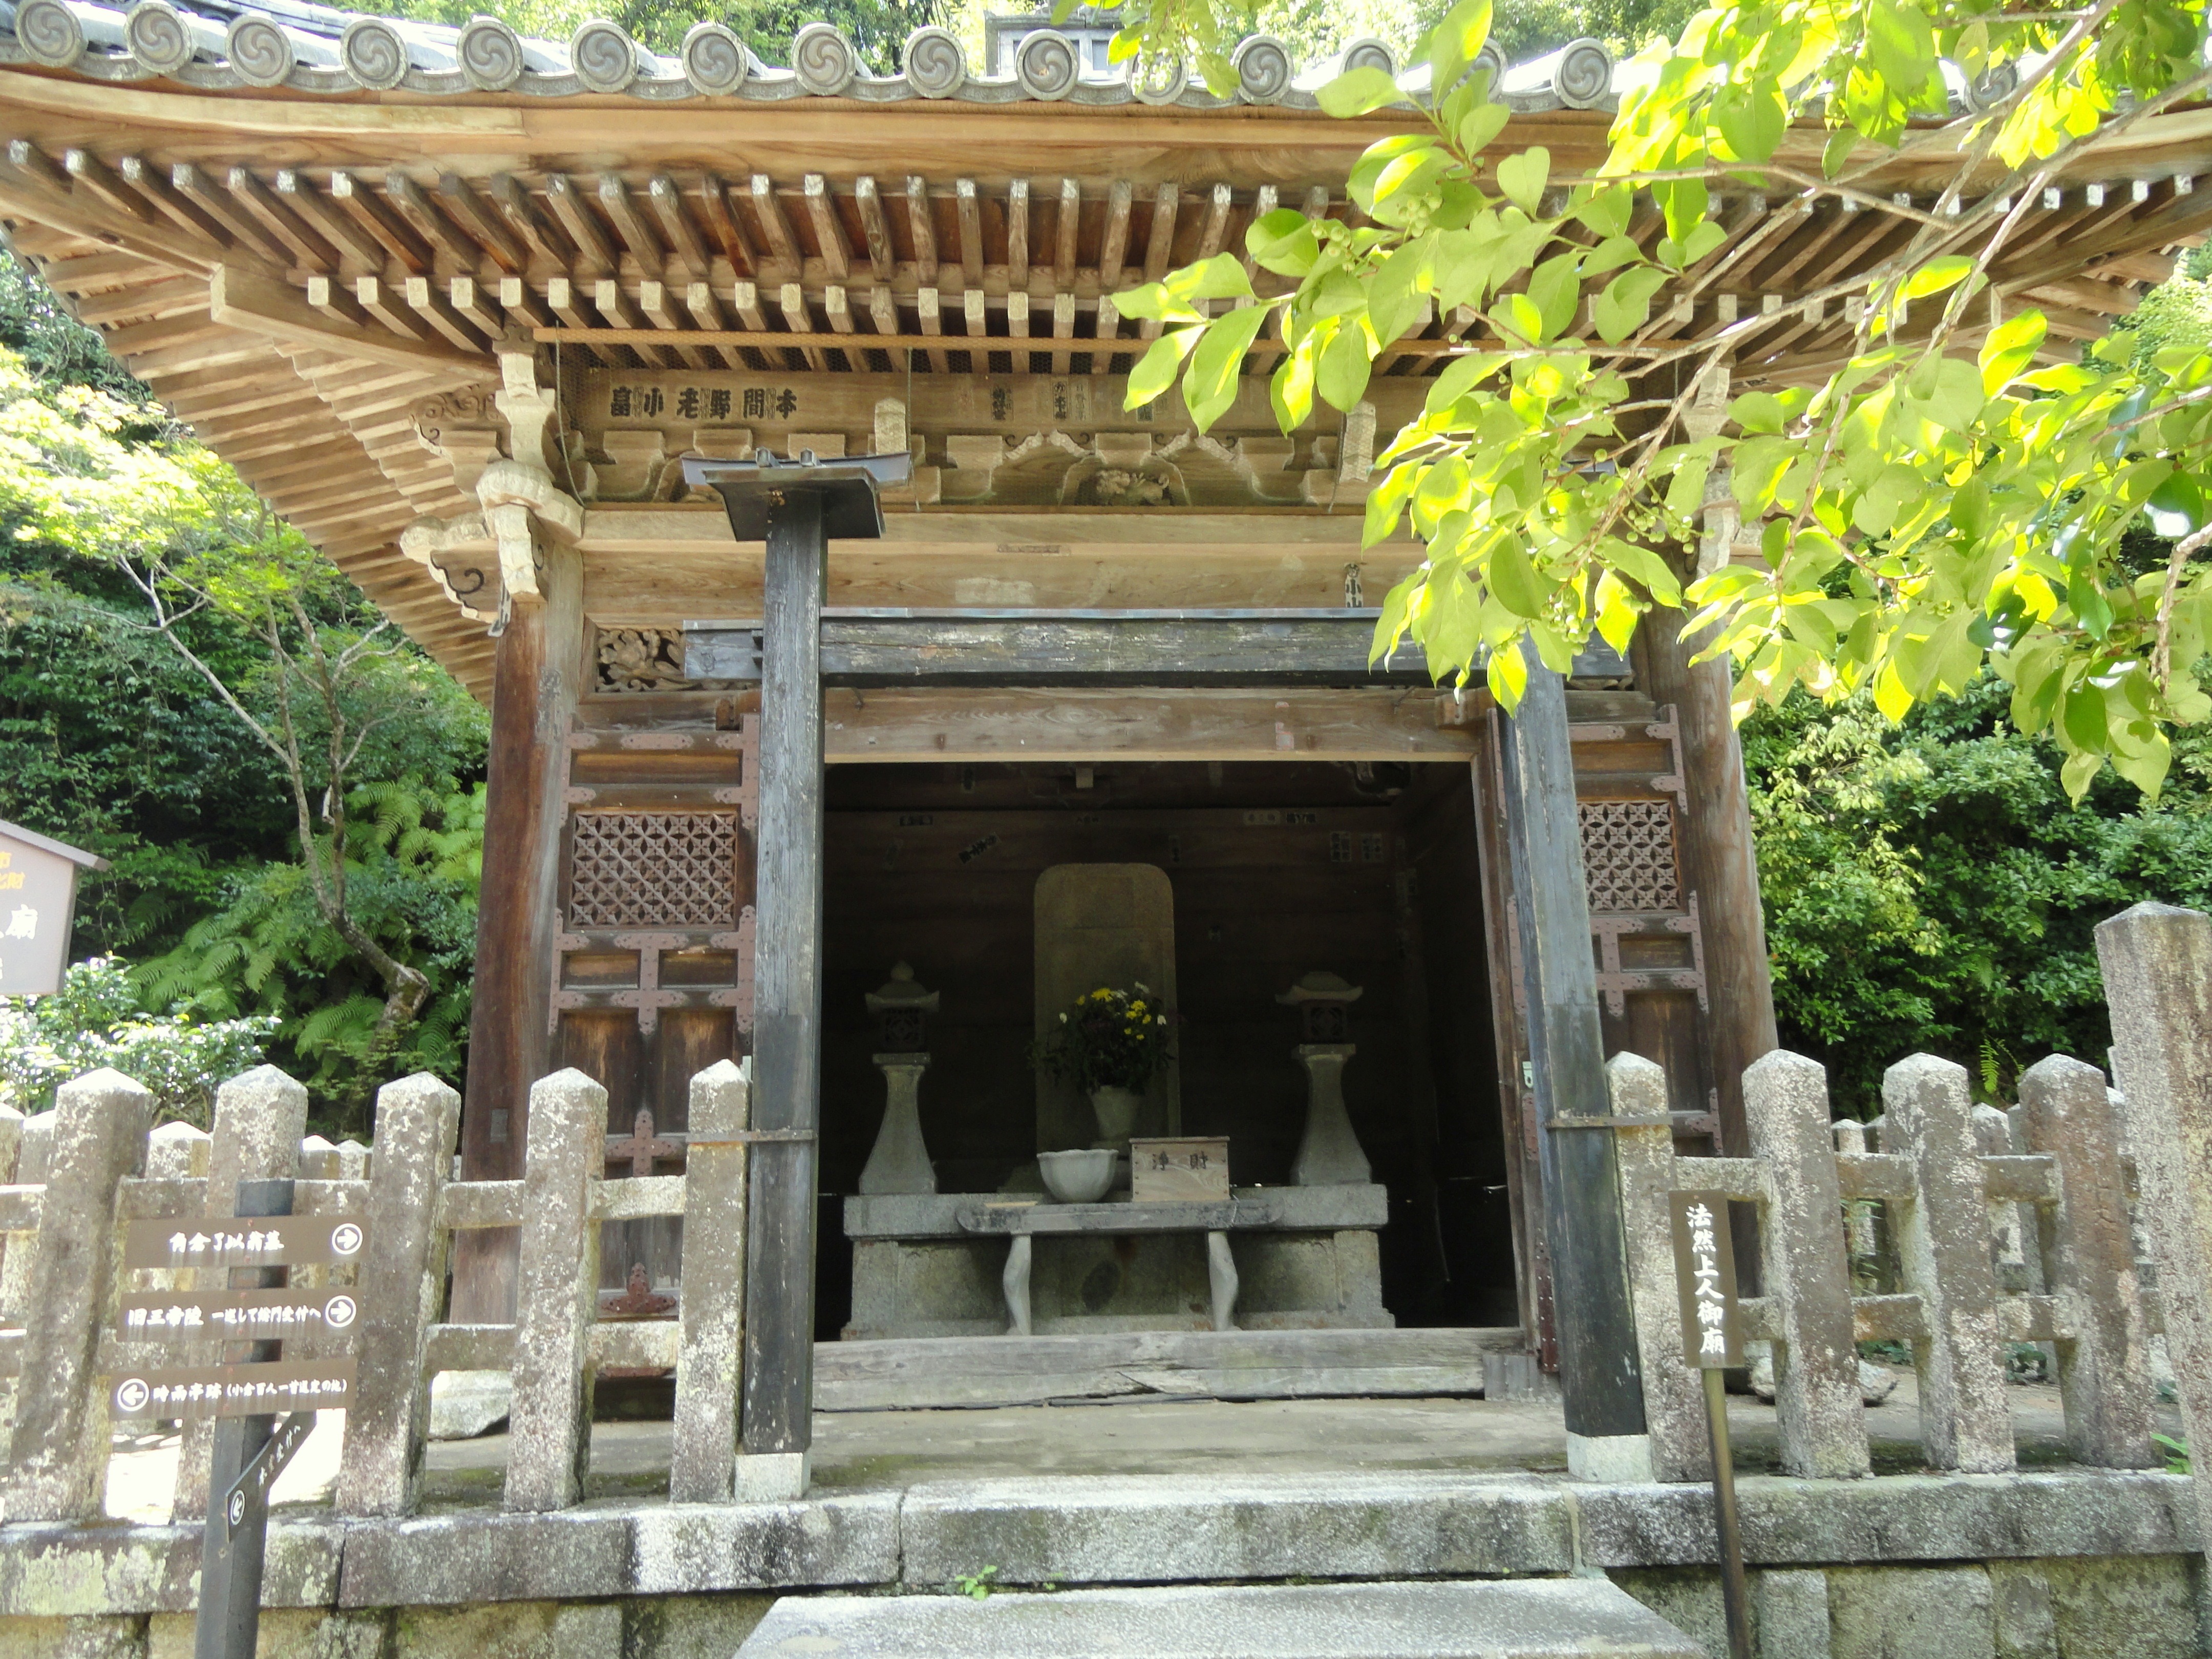 Japan nisonin kyoto old door to shrine japan_nisonin_kyoto http://pixabay.com/users/tpsdave/